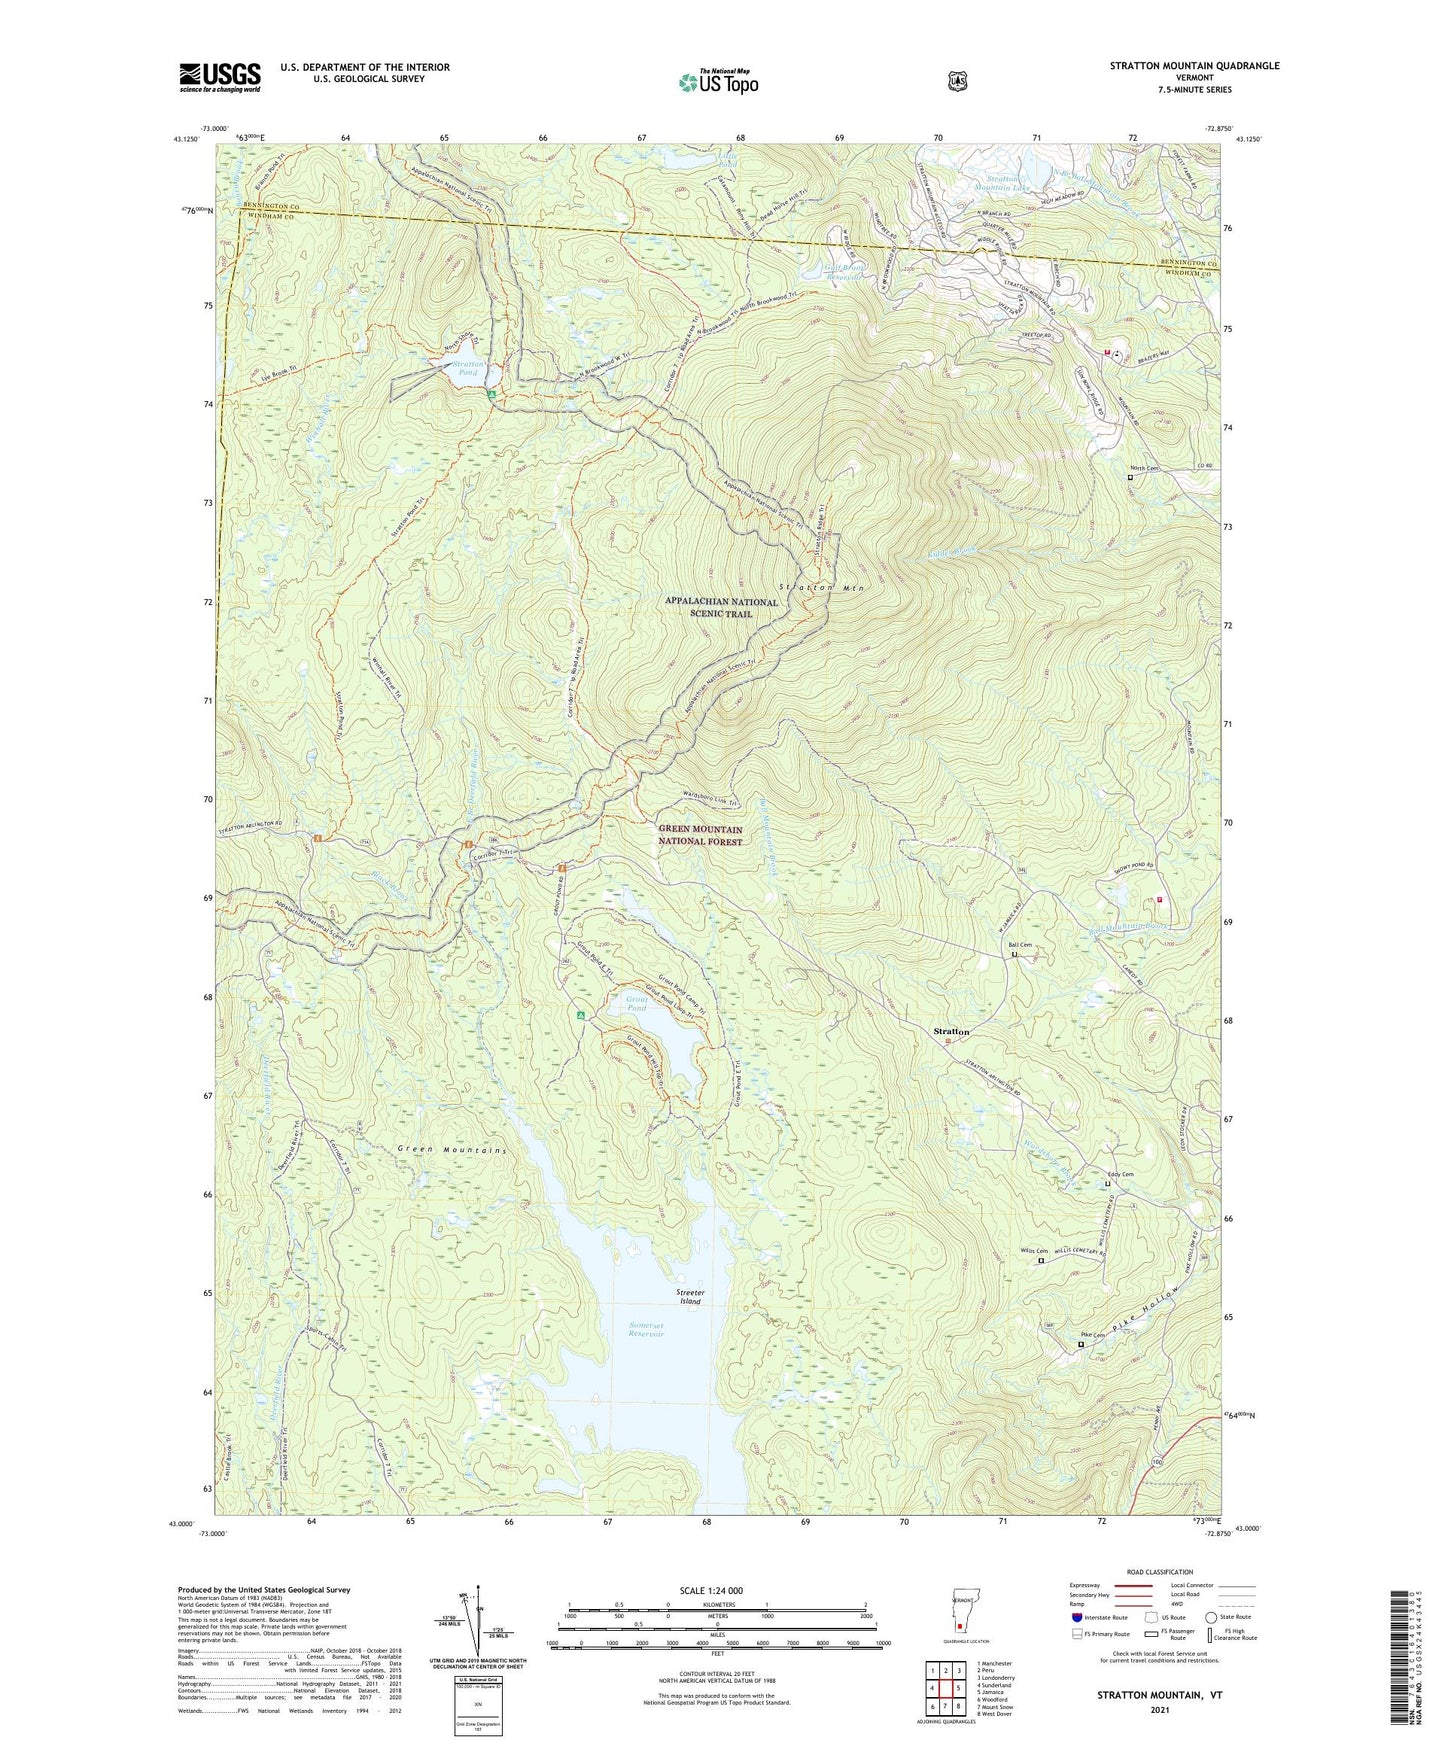 Stratton Mountain Vermont US Topo Map Image